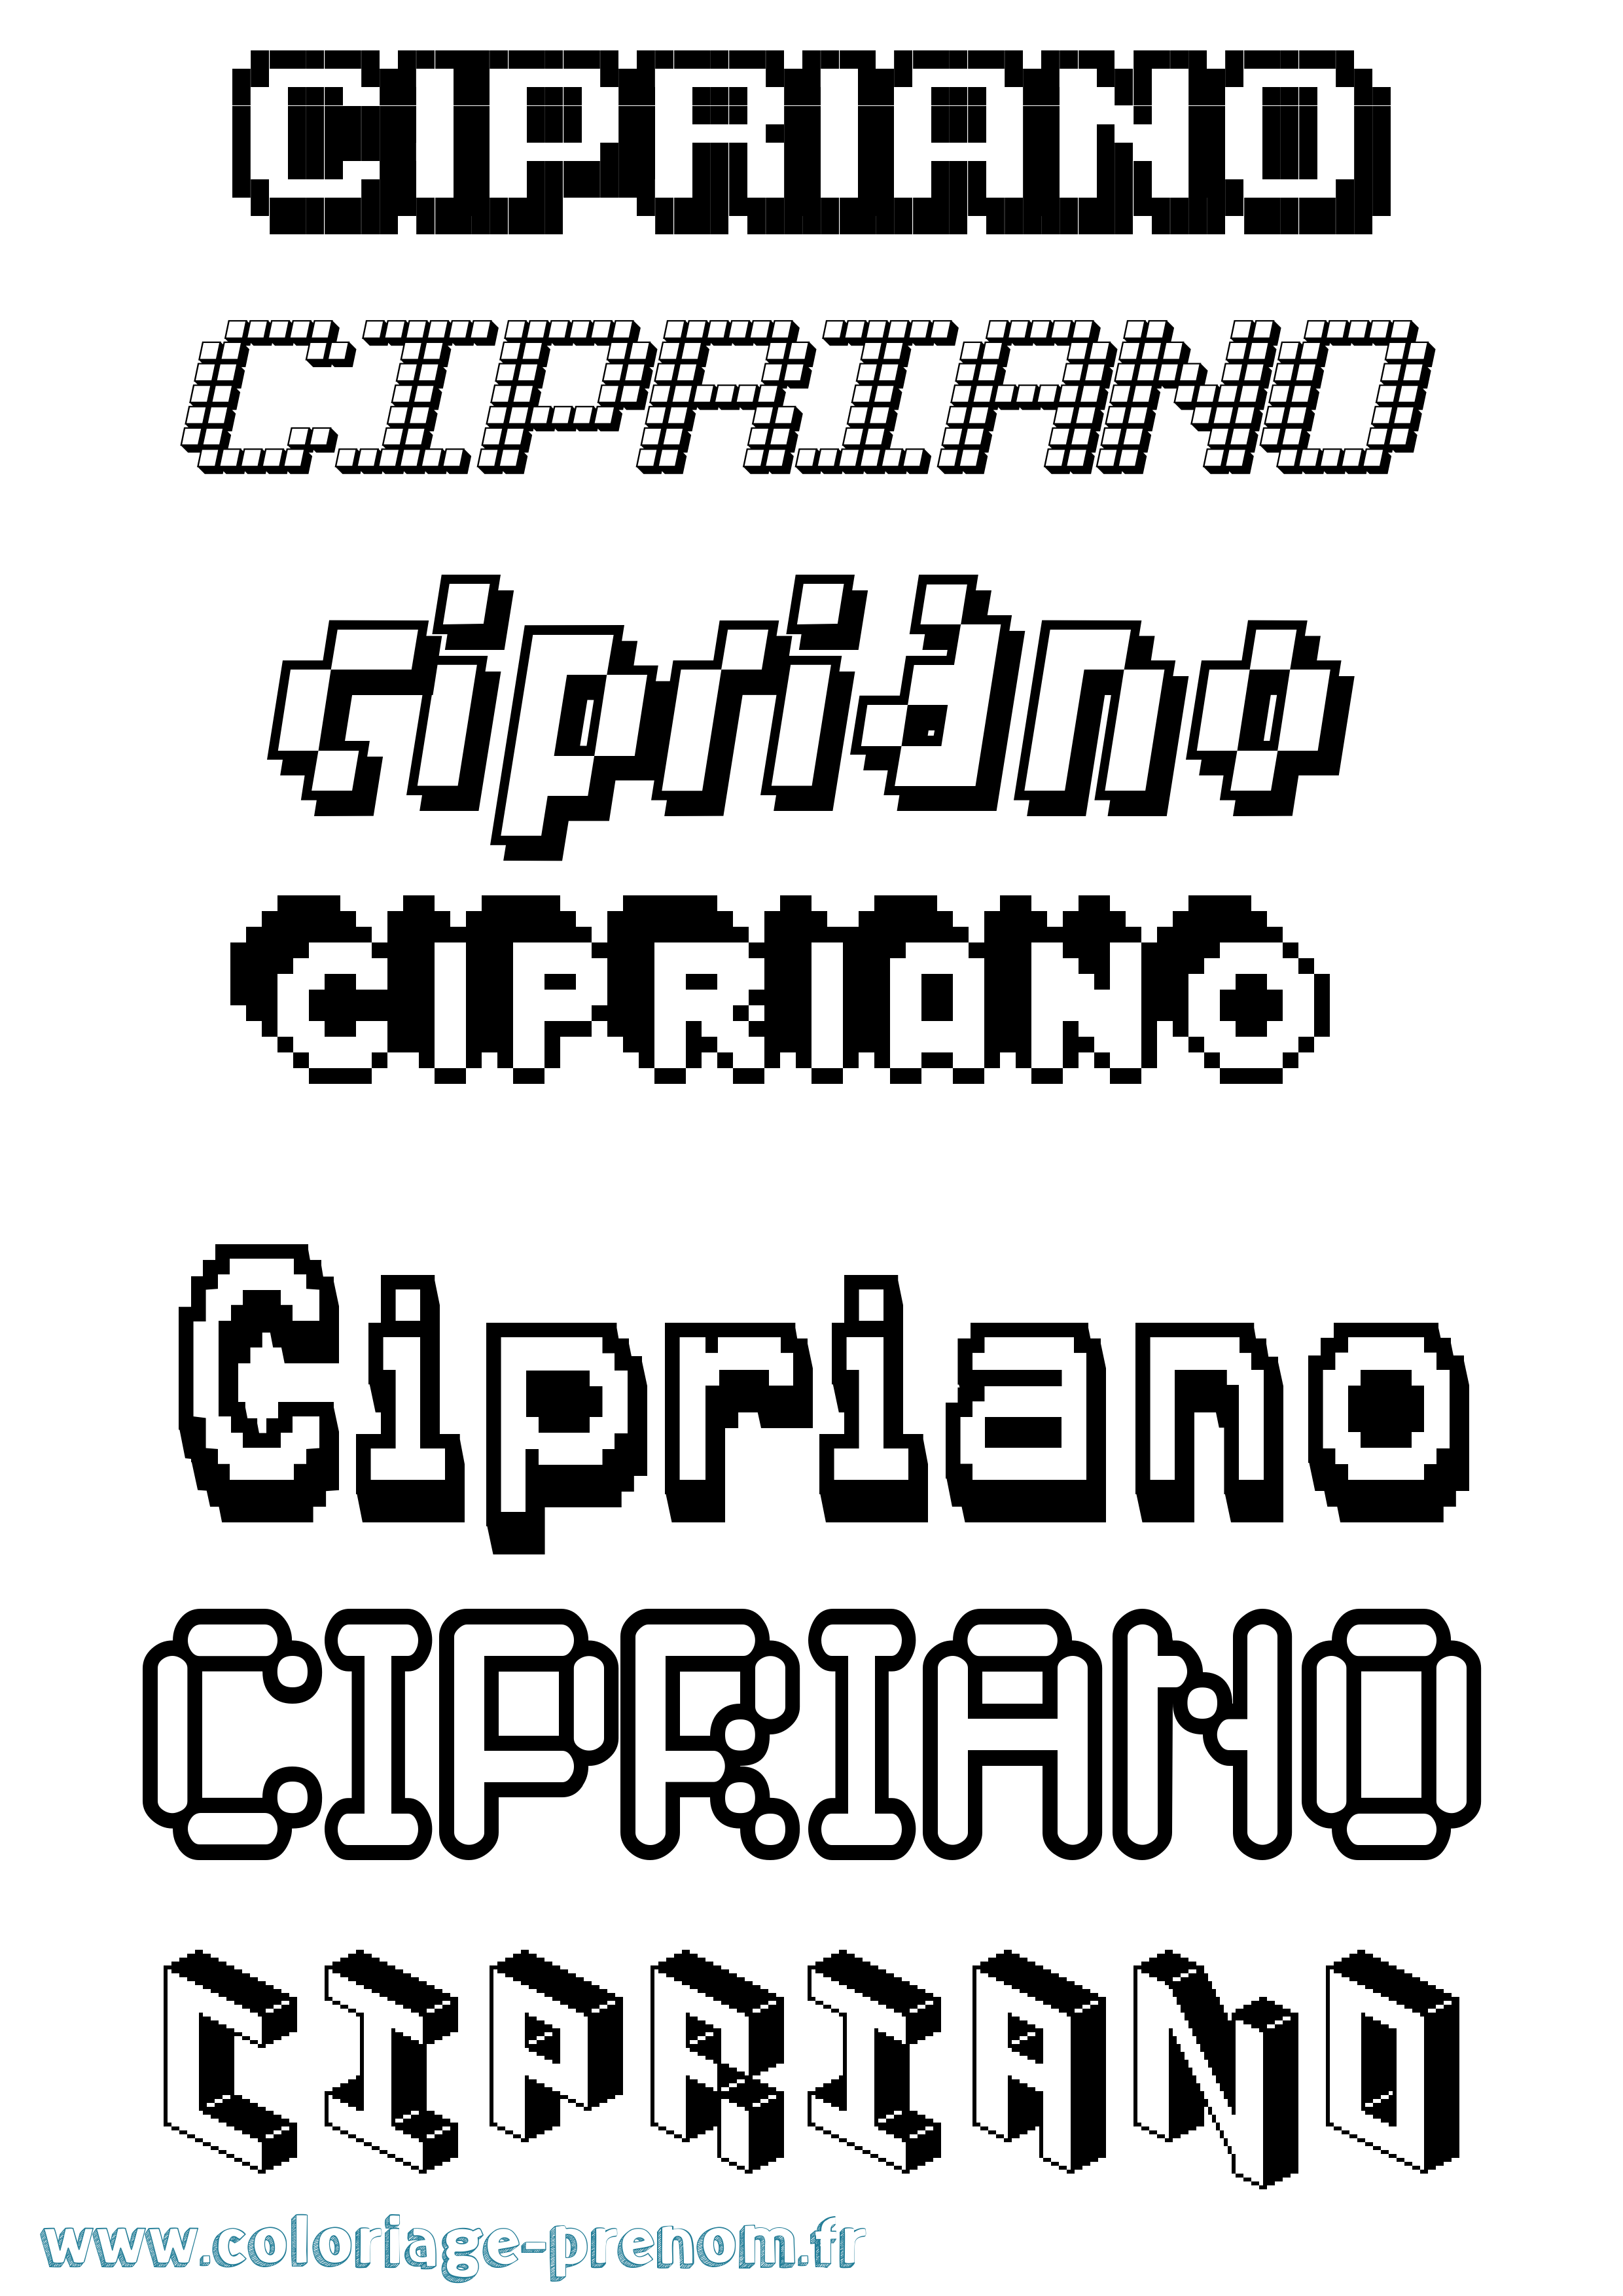 Coloriage prénom Cipriano Pixel